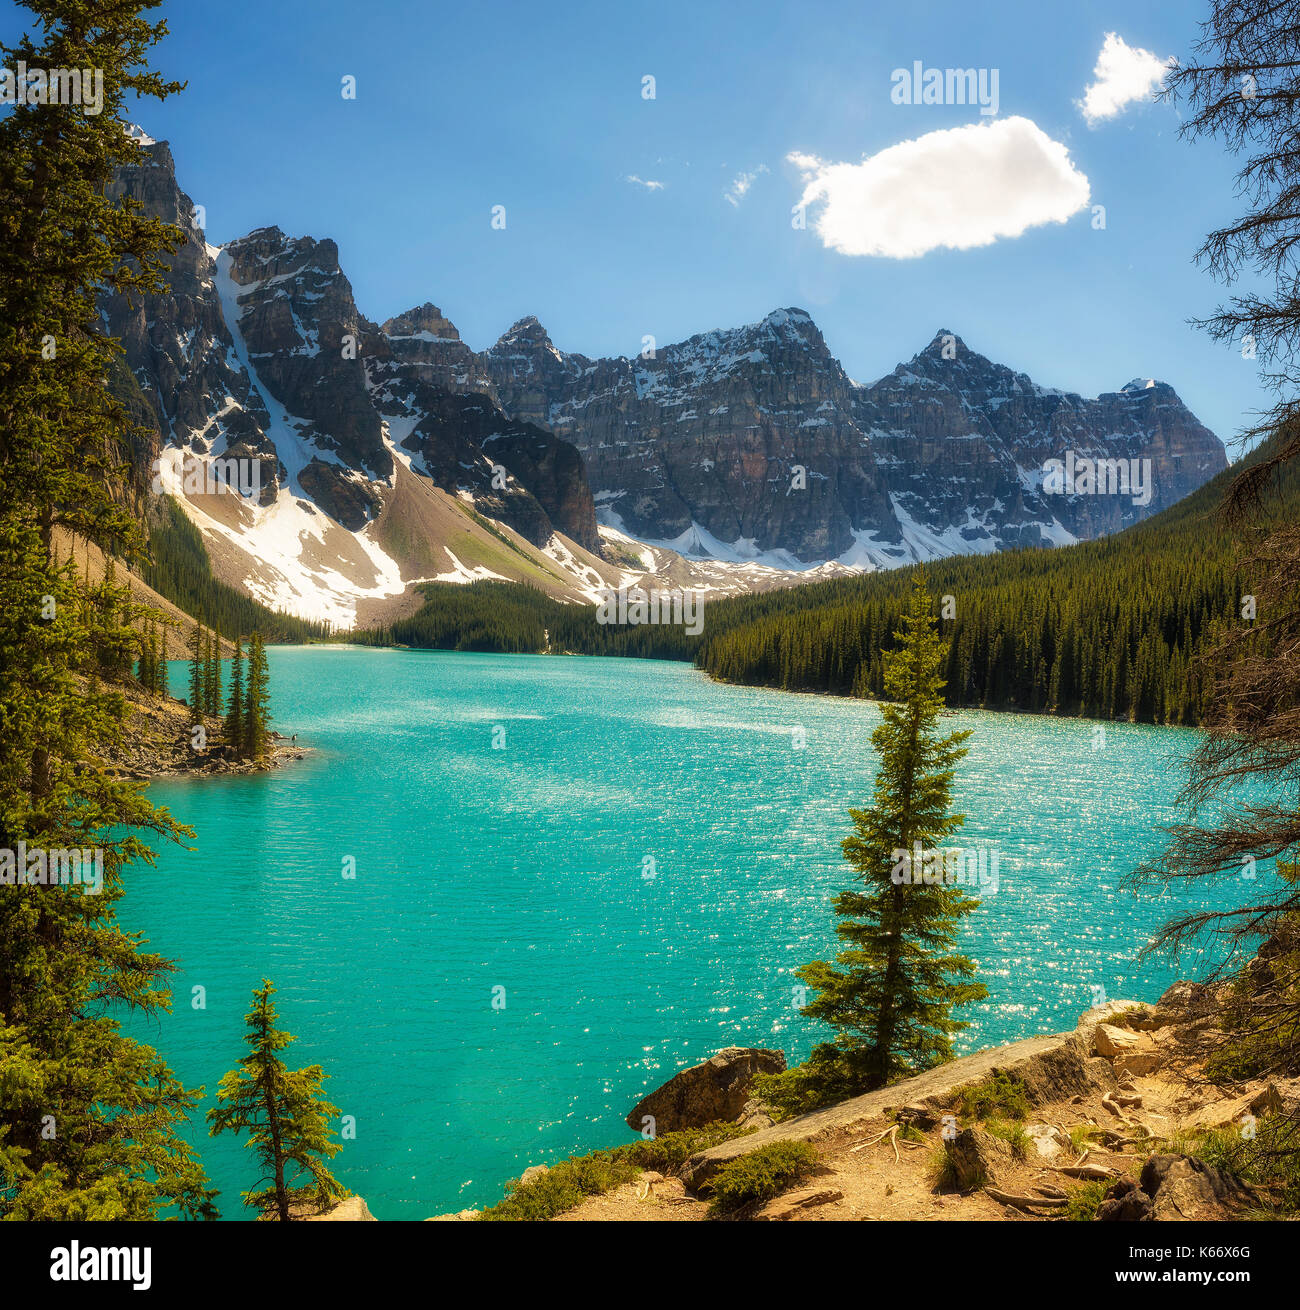 Bella giornata di sole al Lago Moraine nel parco nazionale di Banff, Alberta, Canada, con cime innevate della Canadian Rocky Mountains in background. Foto Stock